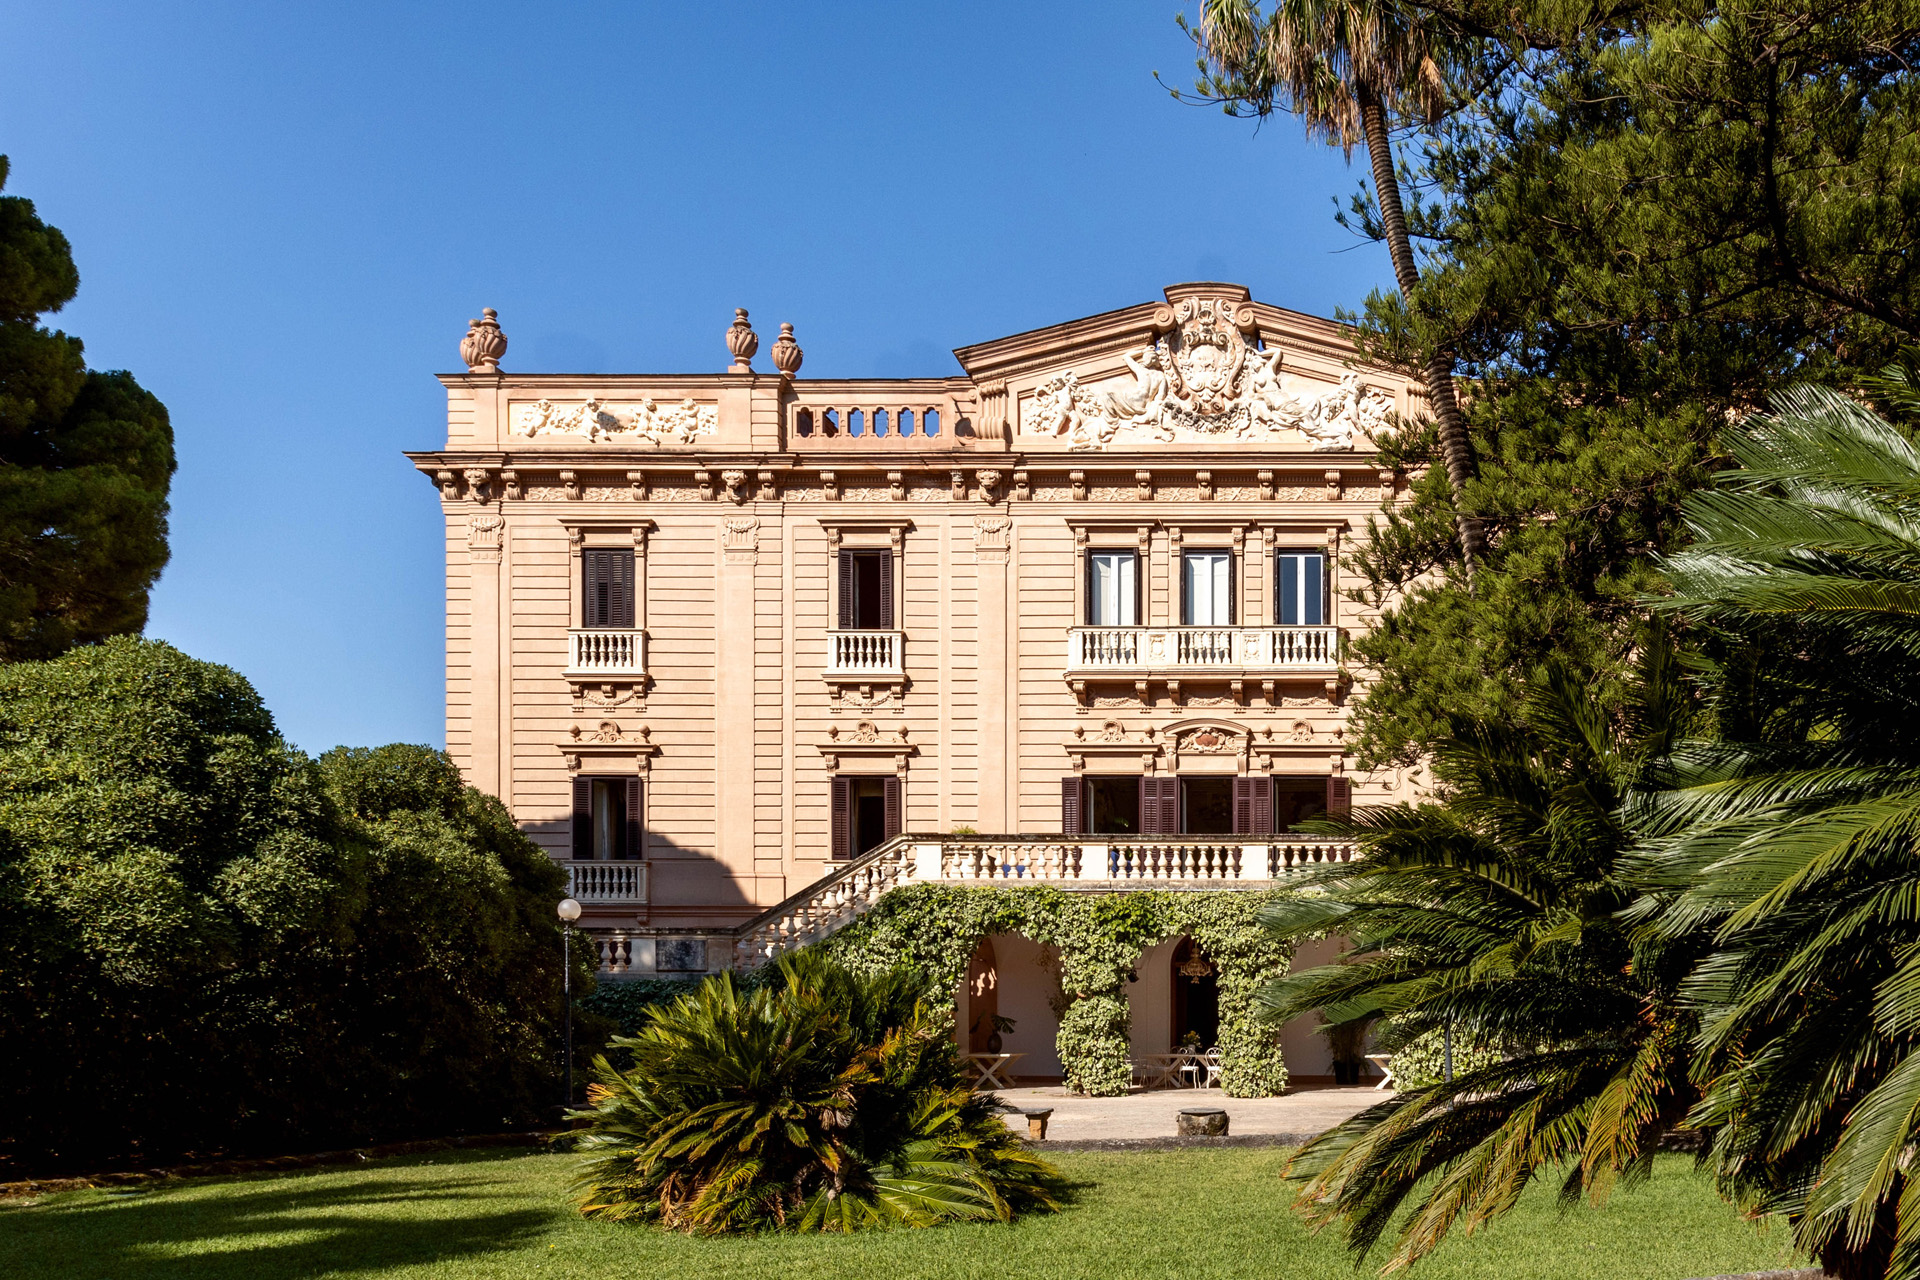 The exterior of Villa Tasca